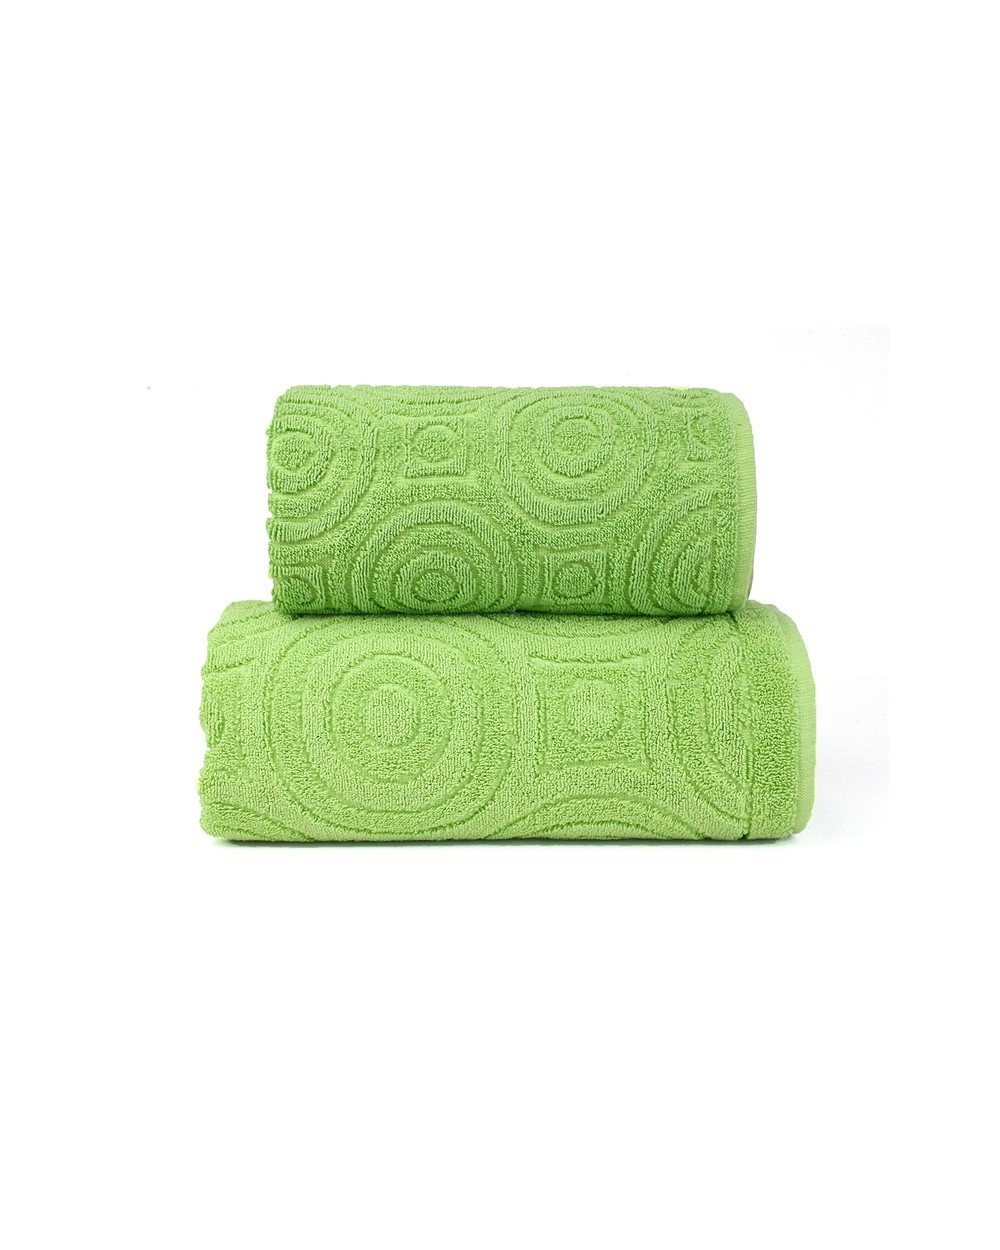 Ręcznik Emma 2 bawełna 70x140 zielony